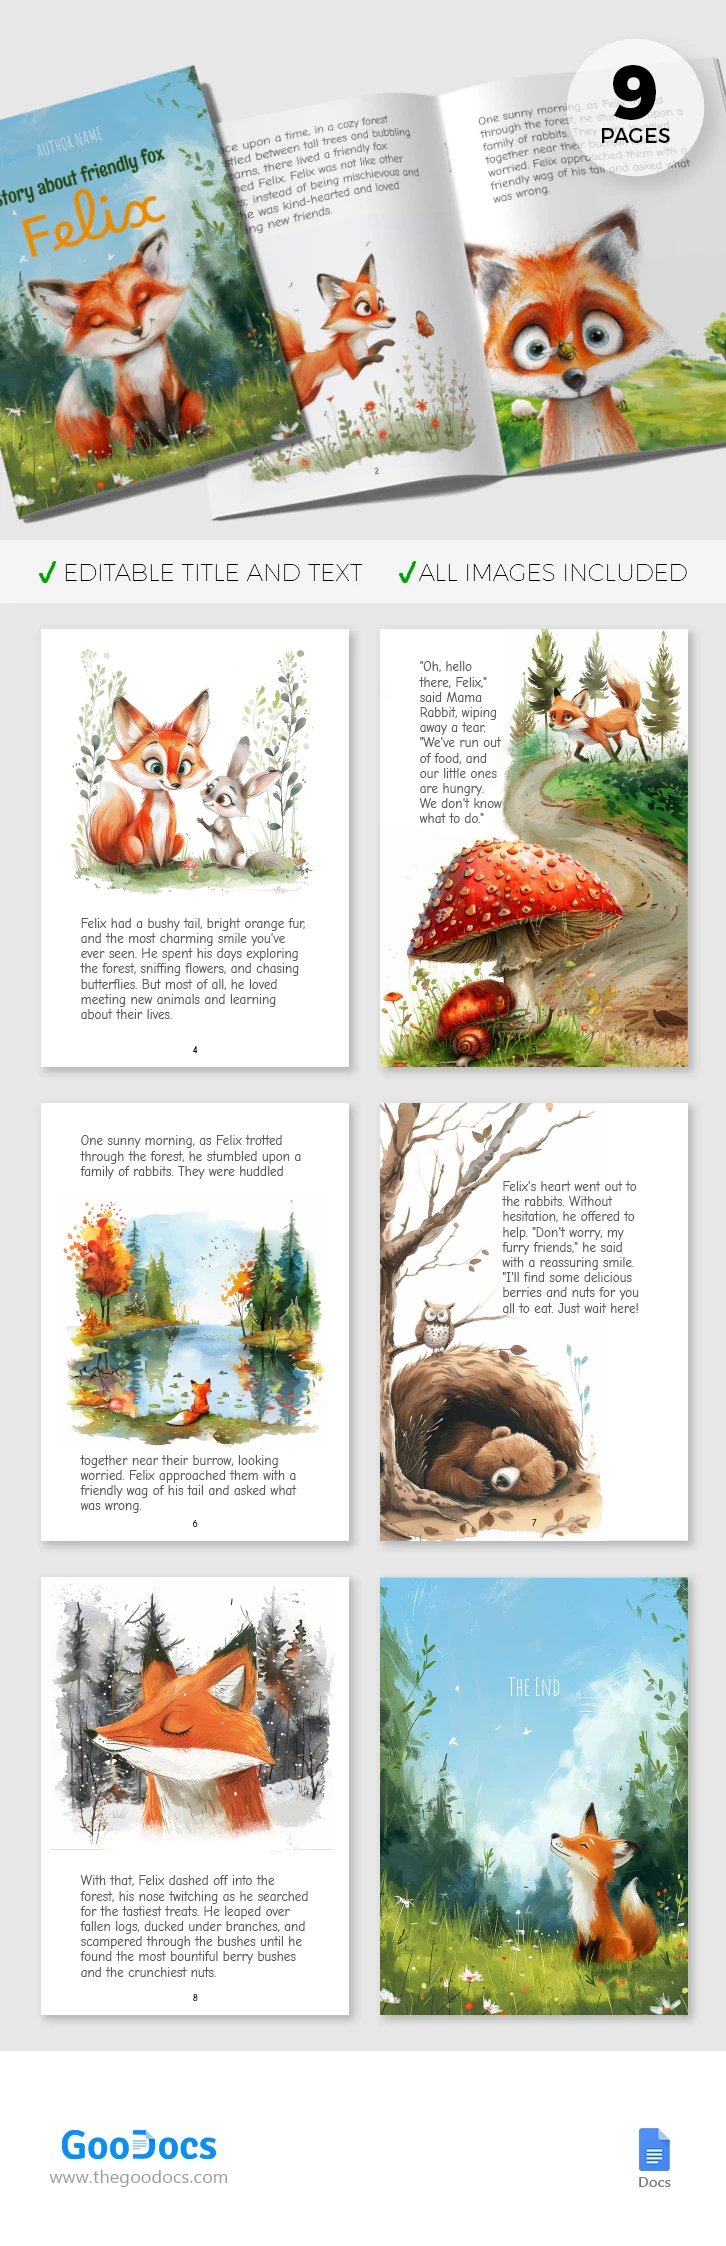 Livre pour enfants illustré - free Google Docs Template - 10068498